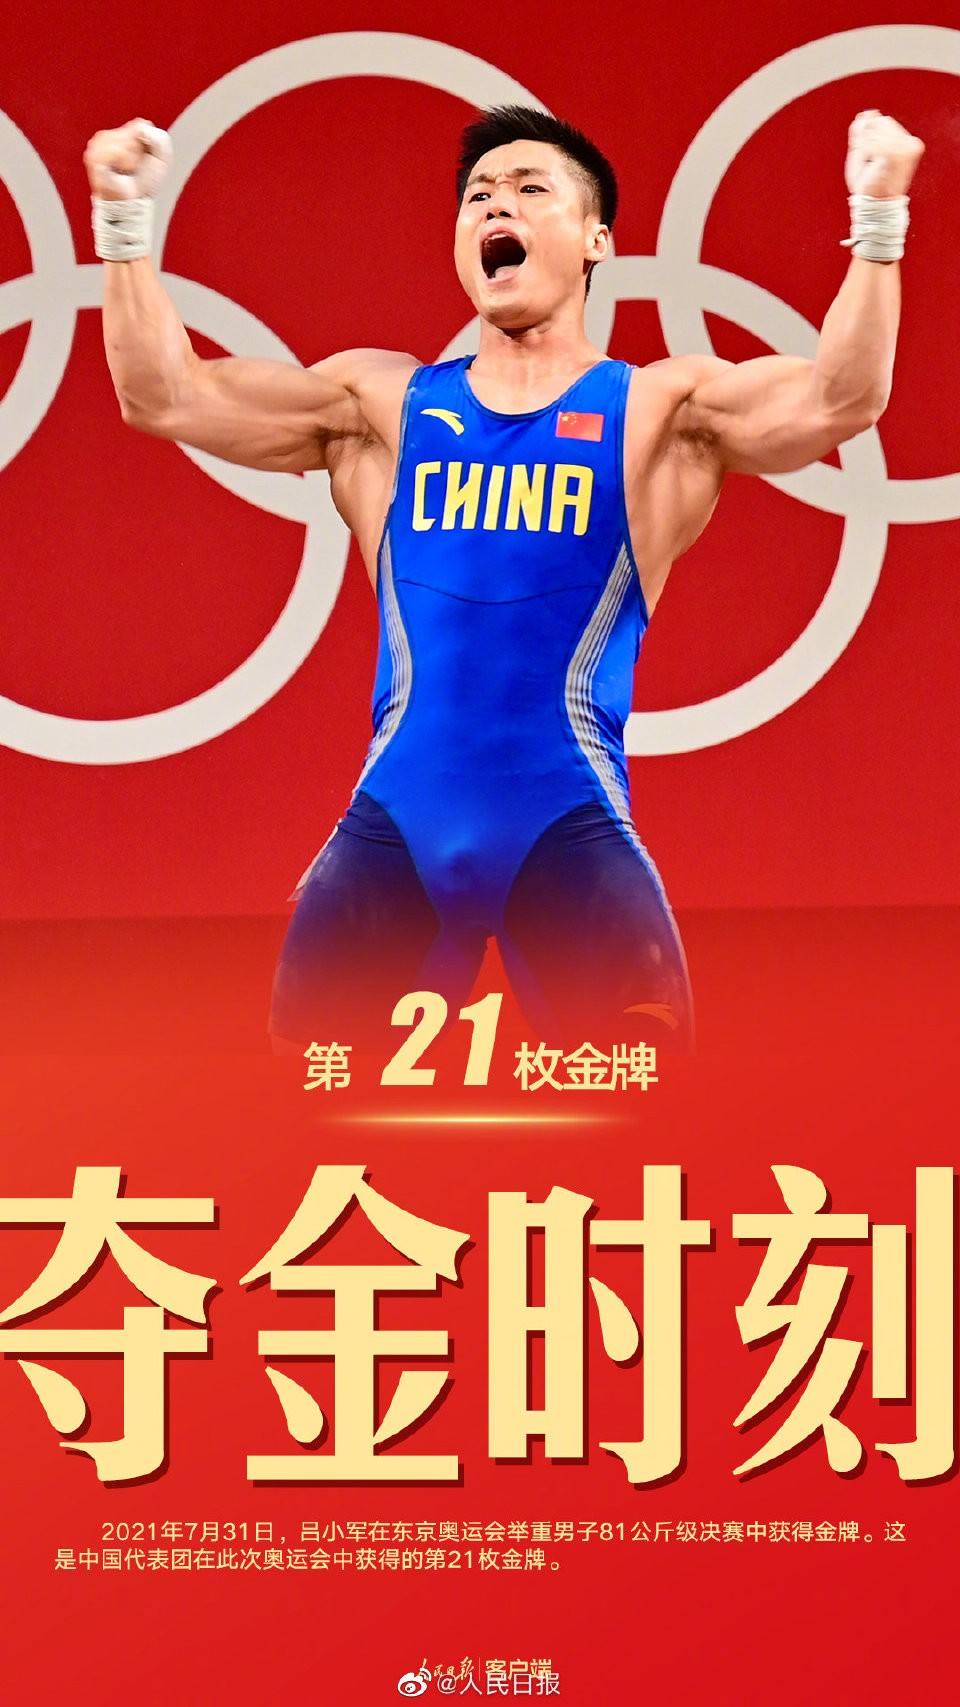 2021年奥运会金牌榜详细 2021年奥运会金牌榜详细中国